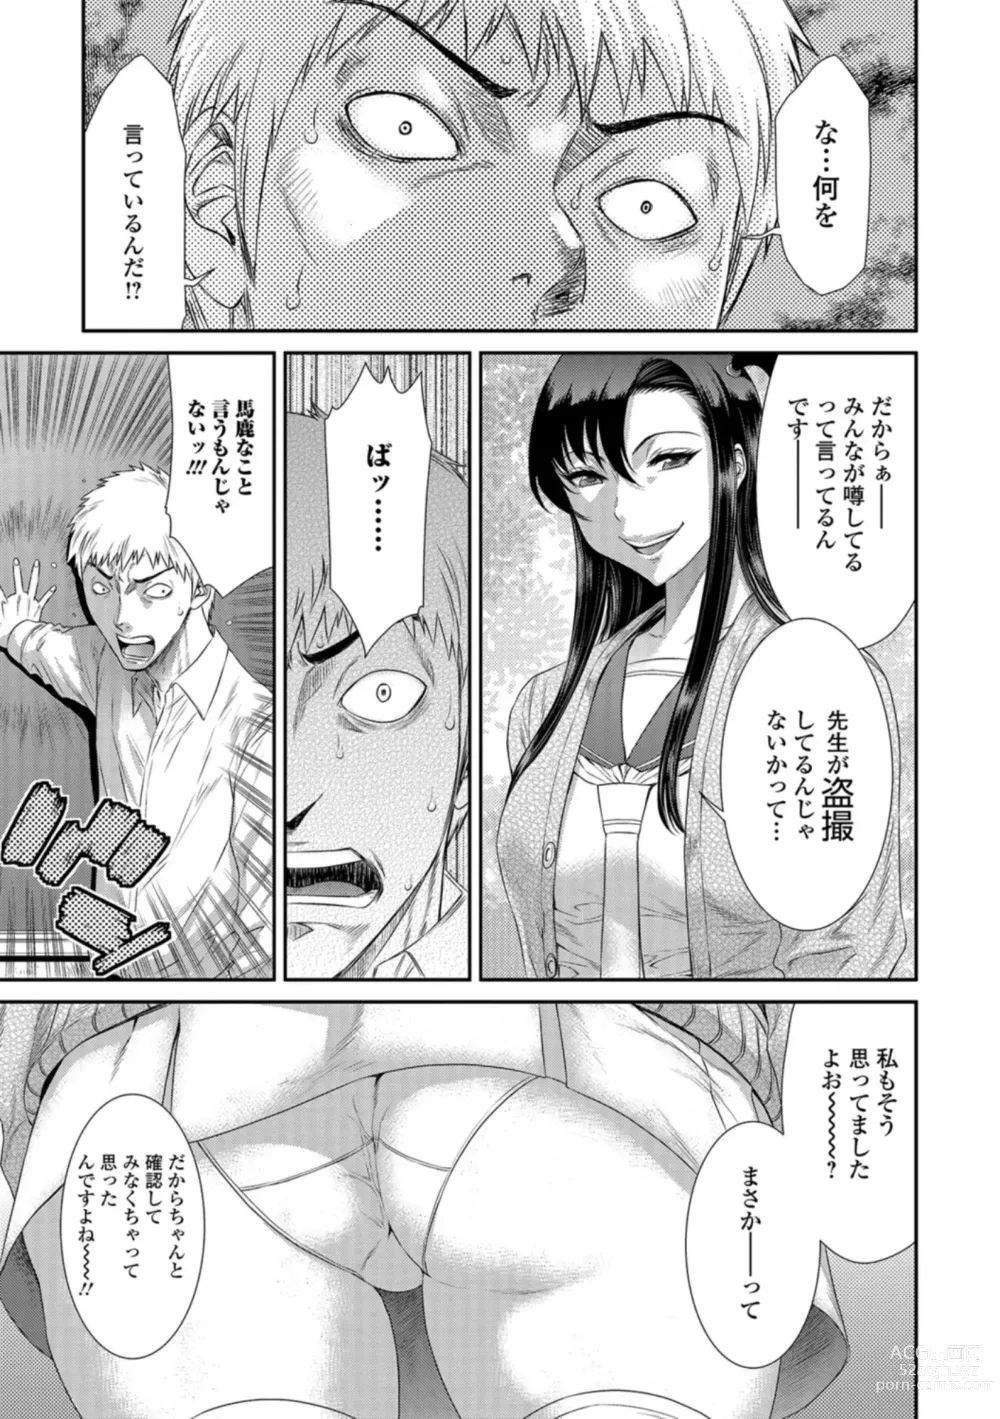 Page 6 of manga Houkago Galhame Nikubenki